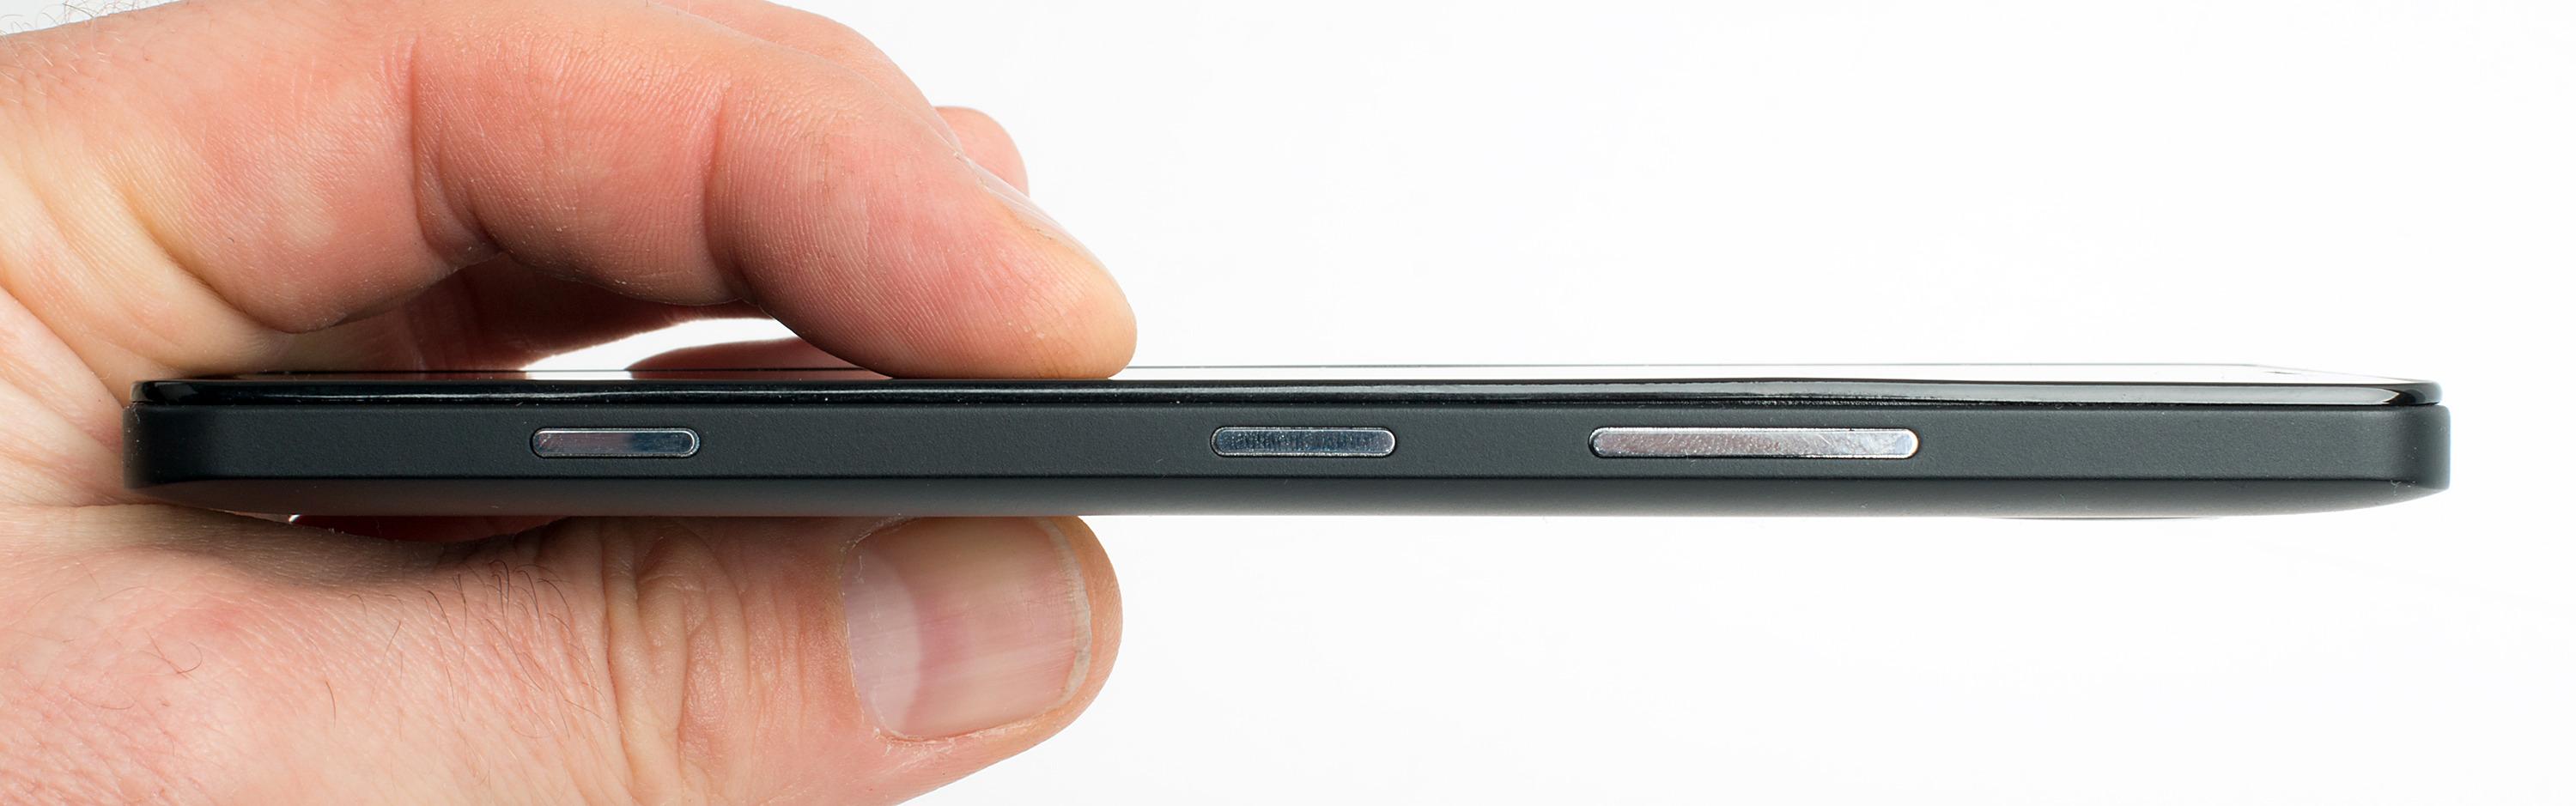 Med en tykkelse på 8,2 millimeter er ikke telefonen av de tynneste – men Lumia 950 virker likevel ikke som noen stor og klumpete telefon. Foto: Kurt Lekanger, Tek.no